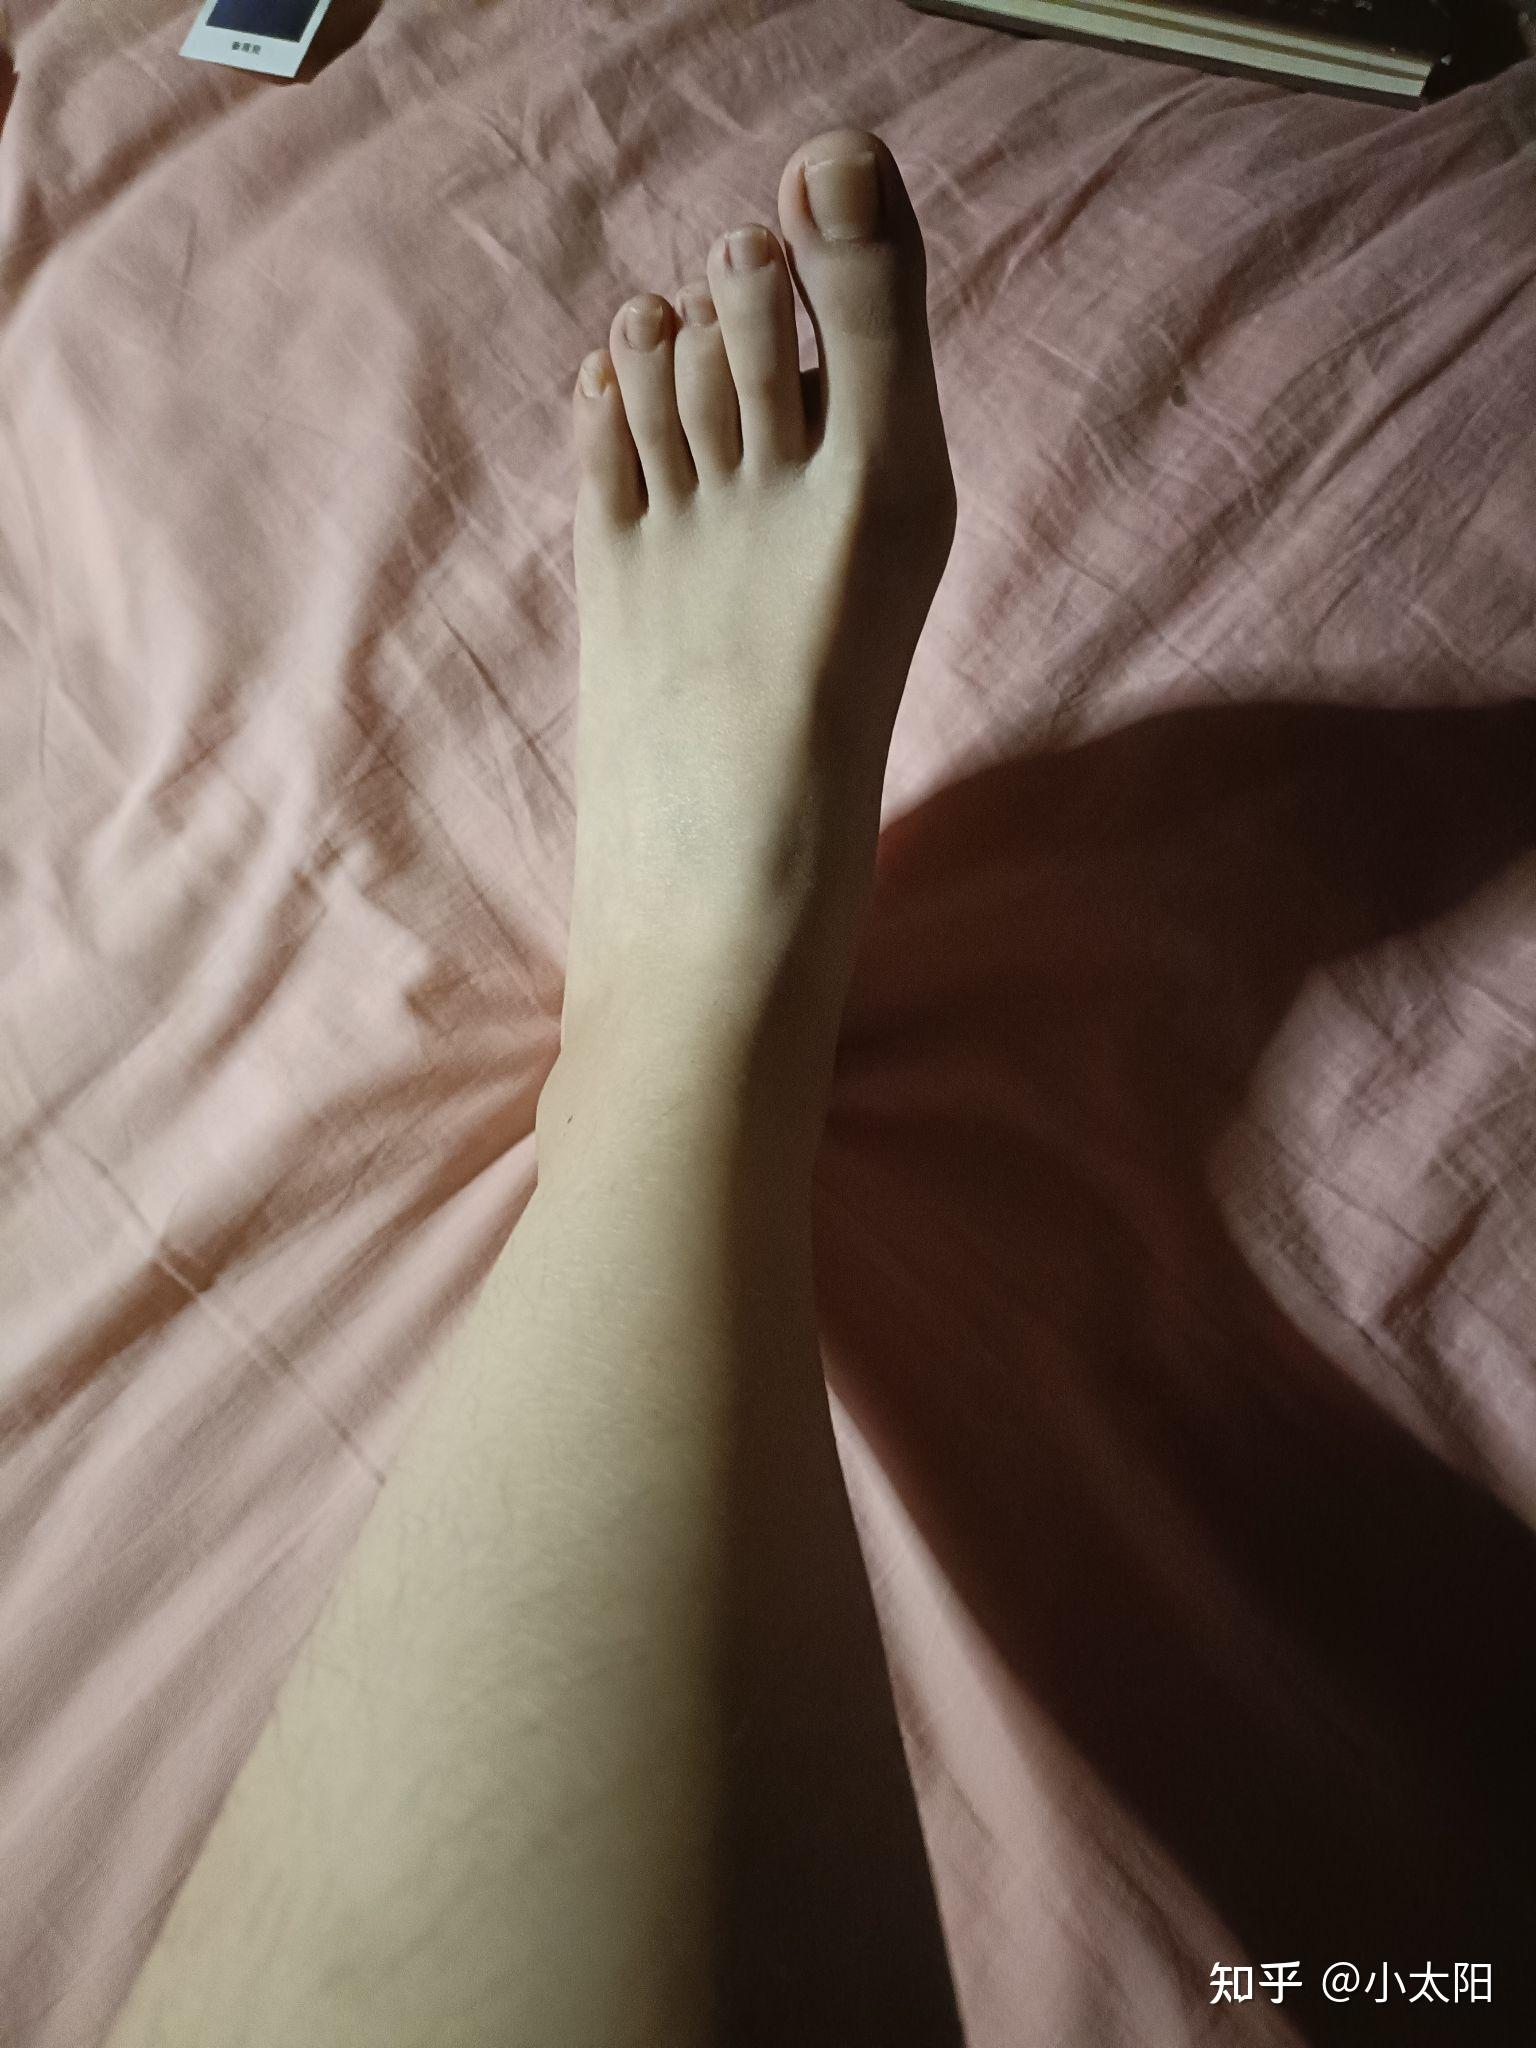 大脚趾特别长,比其他脚趾长很多的人,在现实中存在吗?